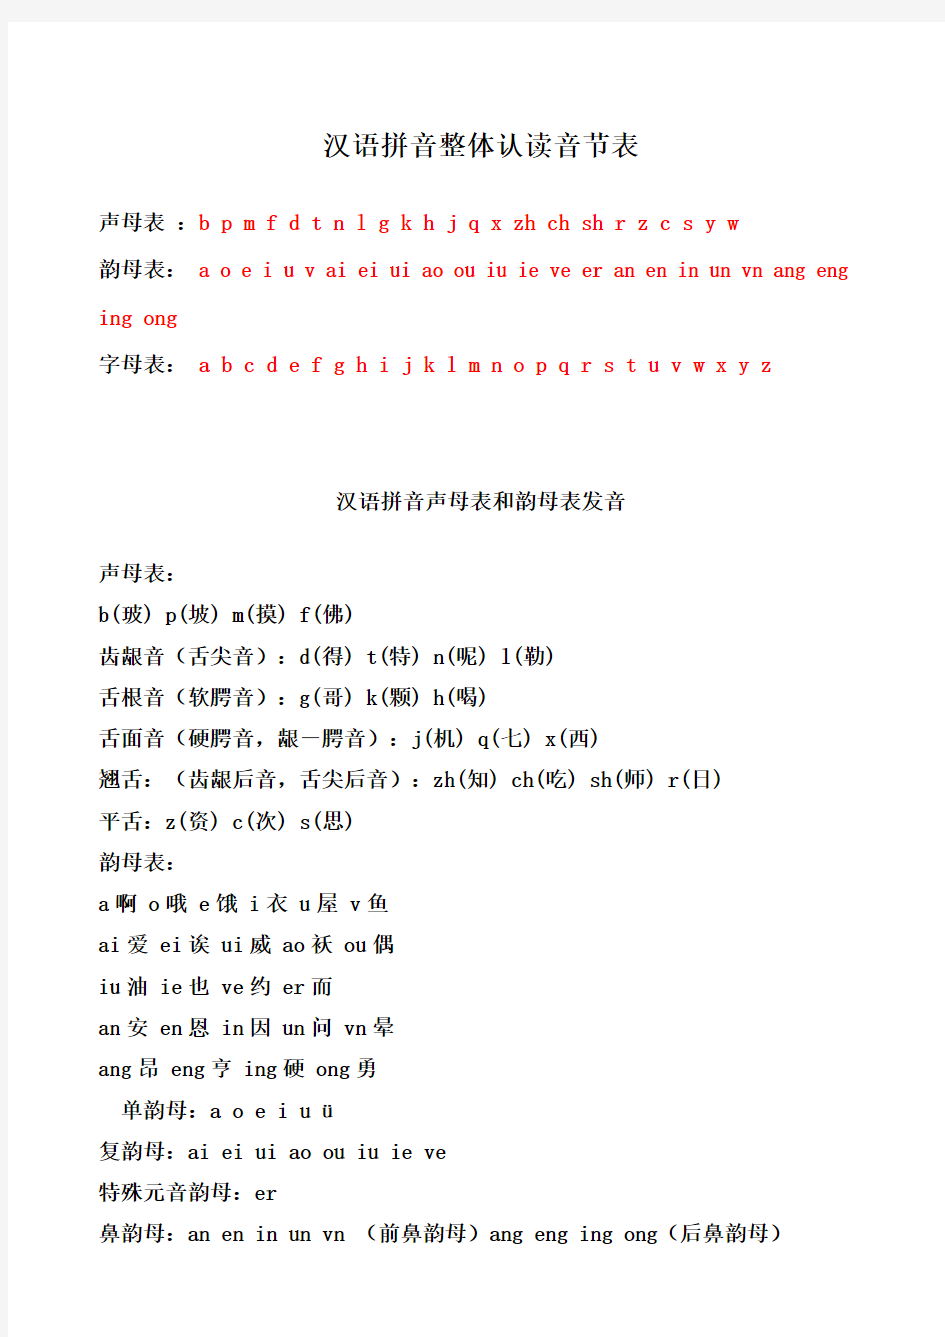 汉语拼音声母表-韵母表-整体认读音节表